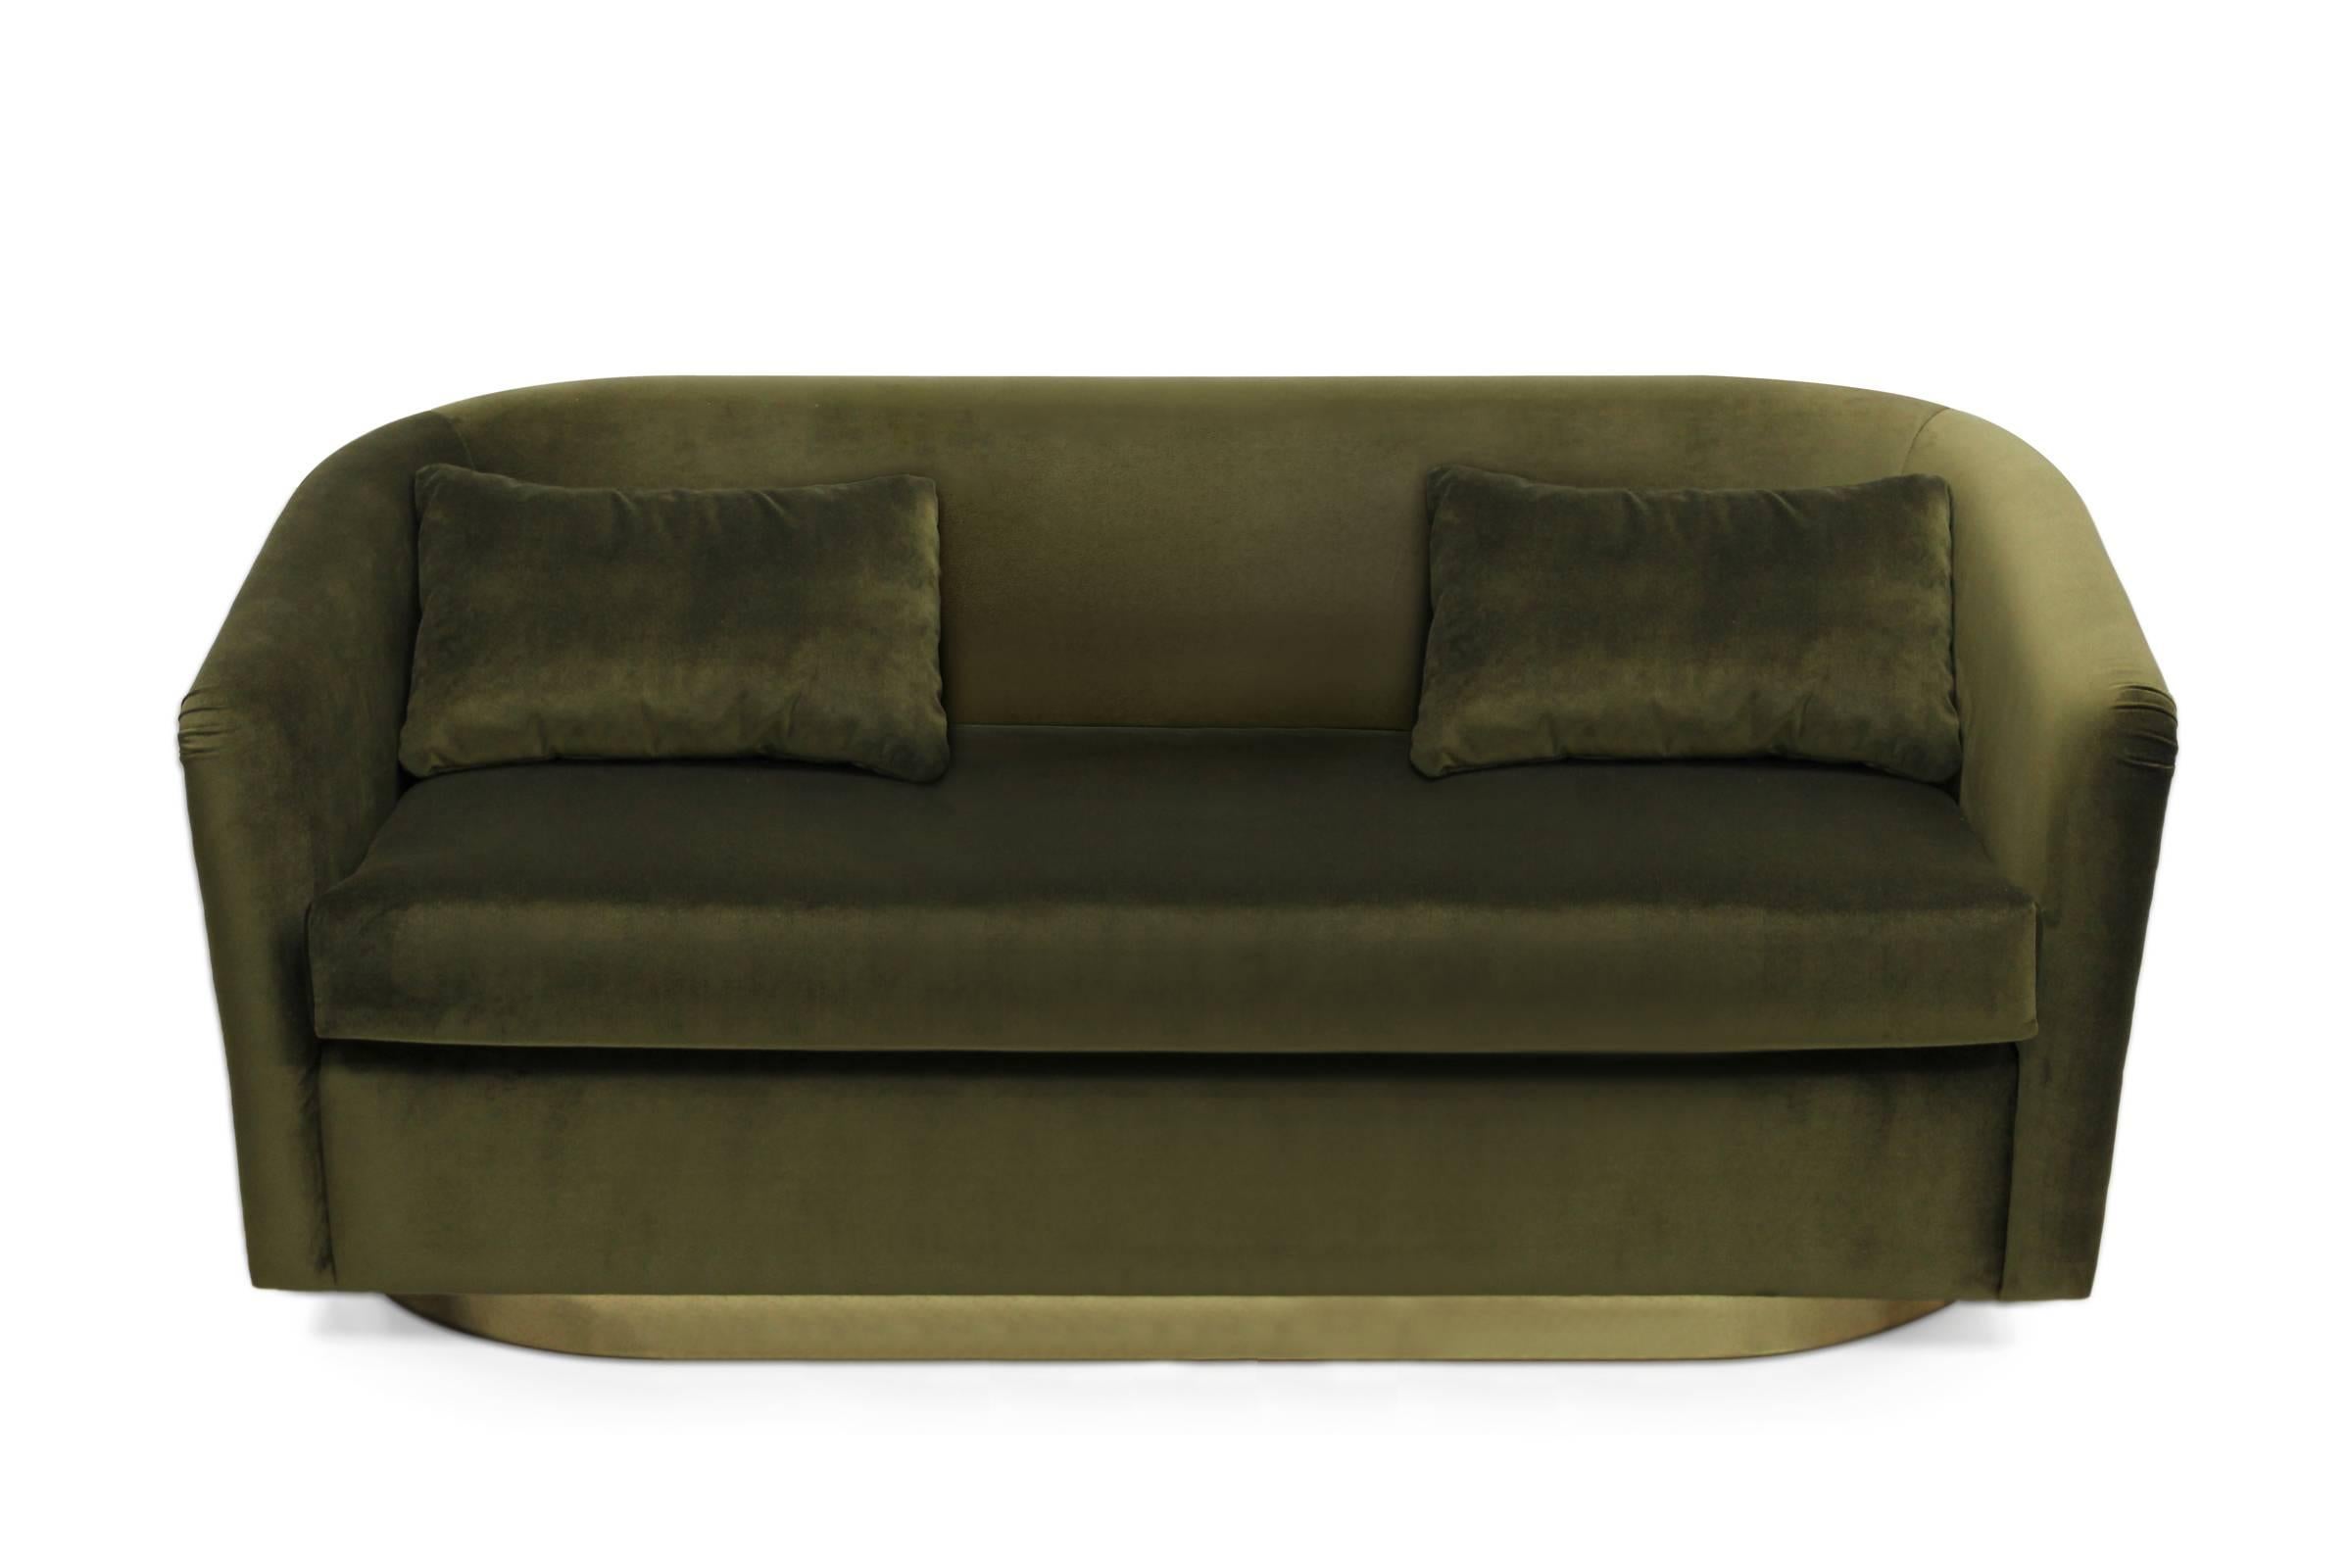 Sofa Zweisitzer naturgrün in grünem Samt.
Sockel und Rückseite sind aus hochglänzendem, gehämmertem Messing. Nägel
sind golden poliert. 